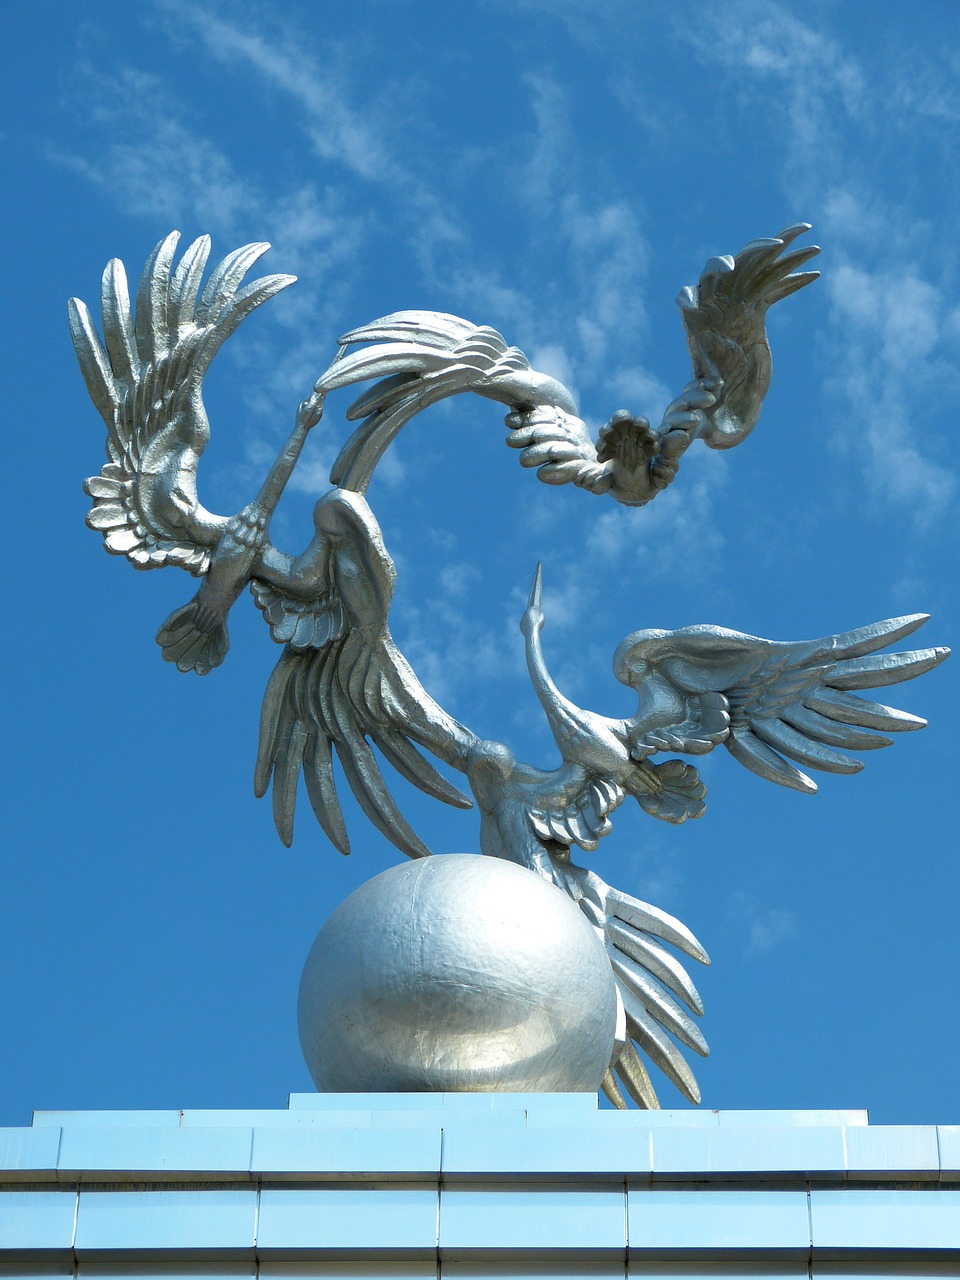 tashkent independence square monument free photo